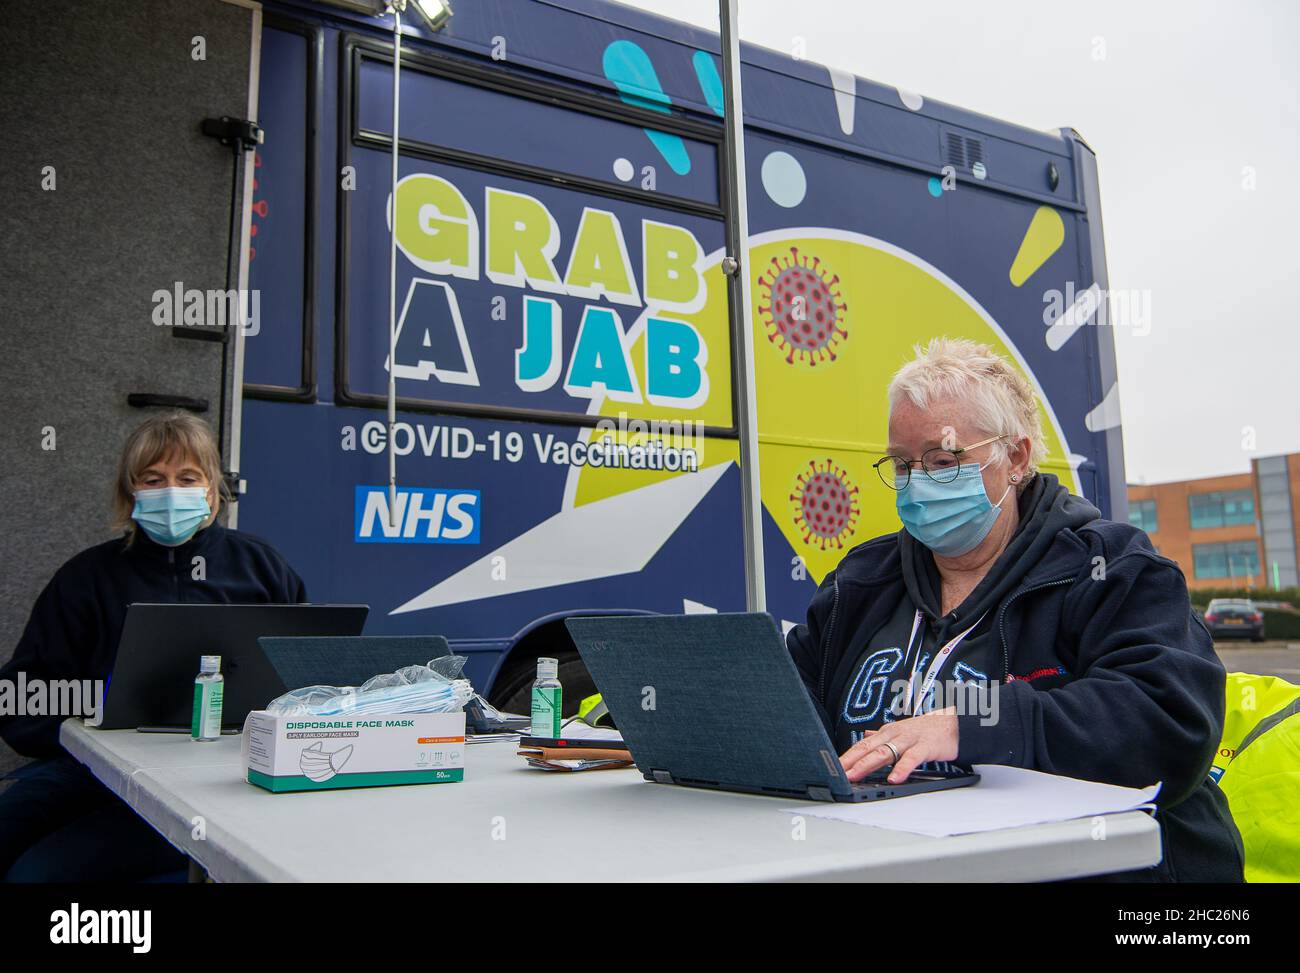 Slough, Berkshire, Reino Unido. 23rd de diciembre de 2021. Un autobús NHS Grab a JAB estaba de vuelta en Slough hoy haciendo vacunas Covid-19 y jabs de refuerzo. El número de casos de Covid-19 positivos alcanzó un máximo de todos los tiempos en el Reino Unido esta semana, ya que el Covid-19 de Omicn infecta a personas en todo el Reino Unido. Crédito: Maureen McLean/Alamy Live News Foto de stock